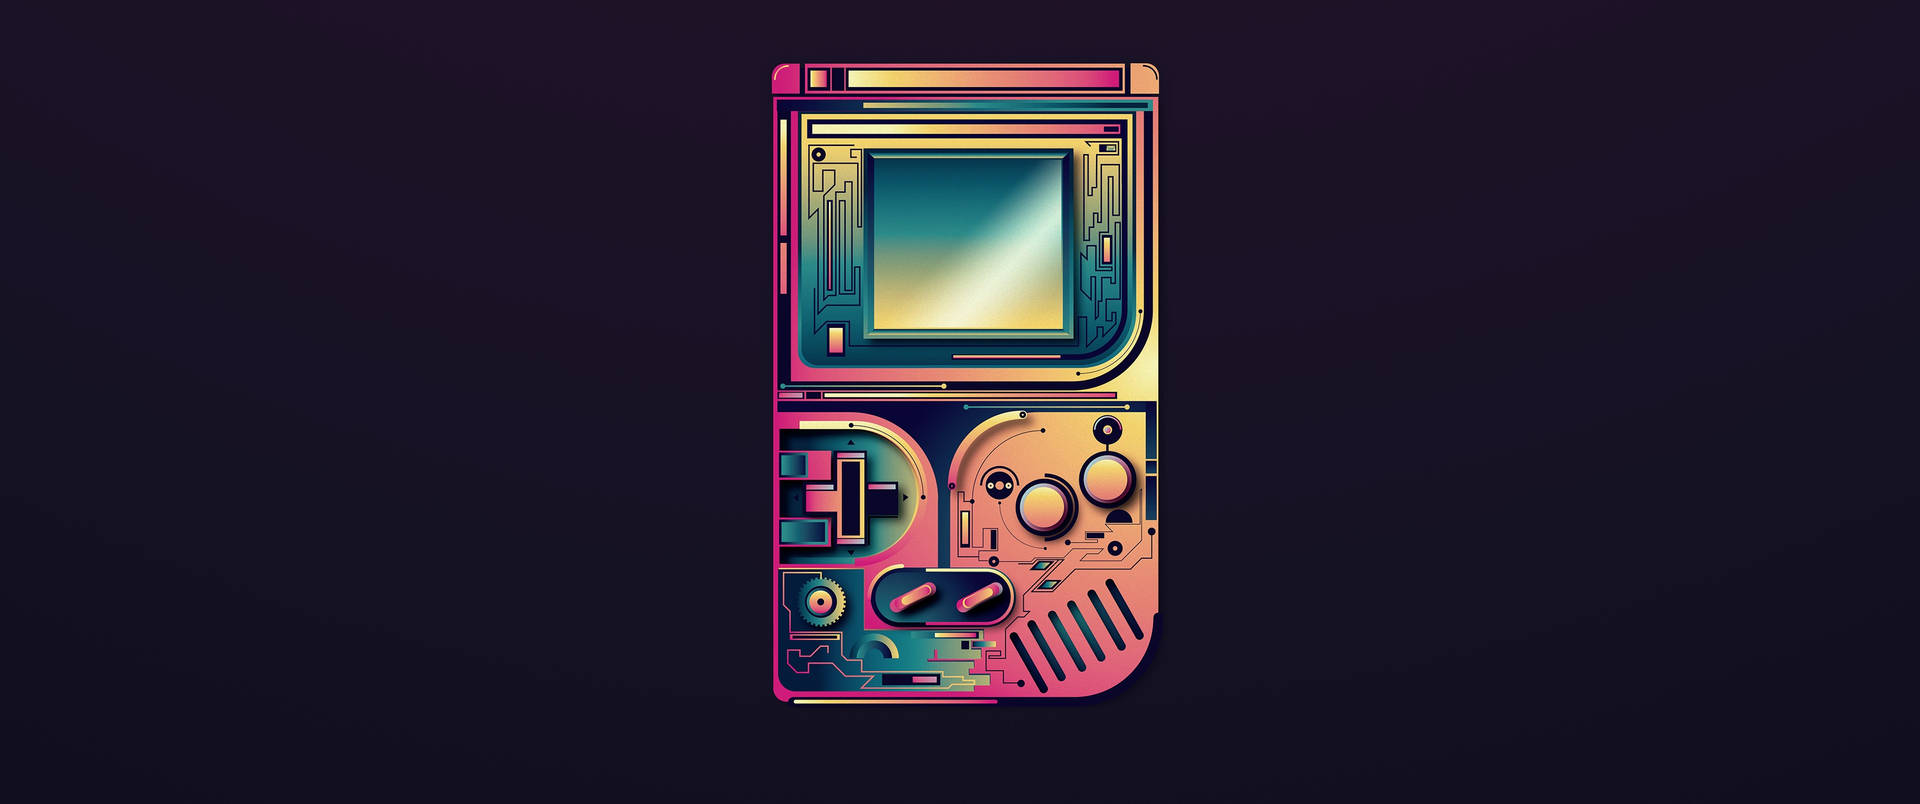 Gameboy Colorido Com Mecanismo Interno Visível. Papel de Parede